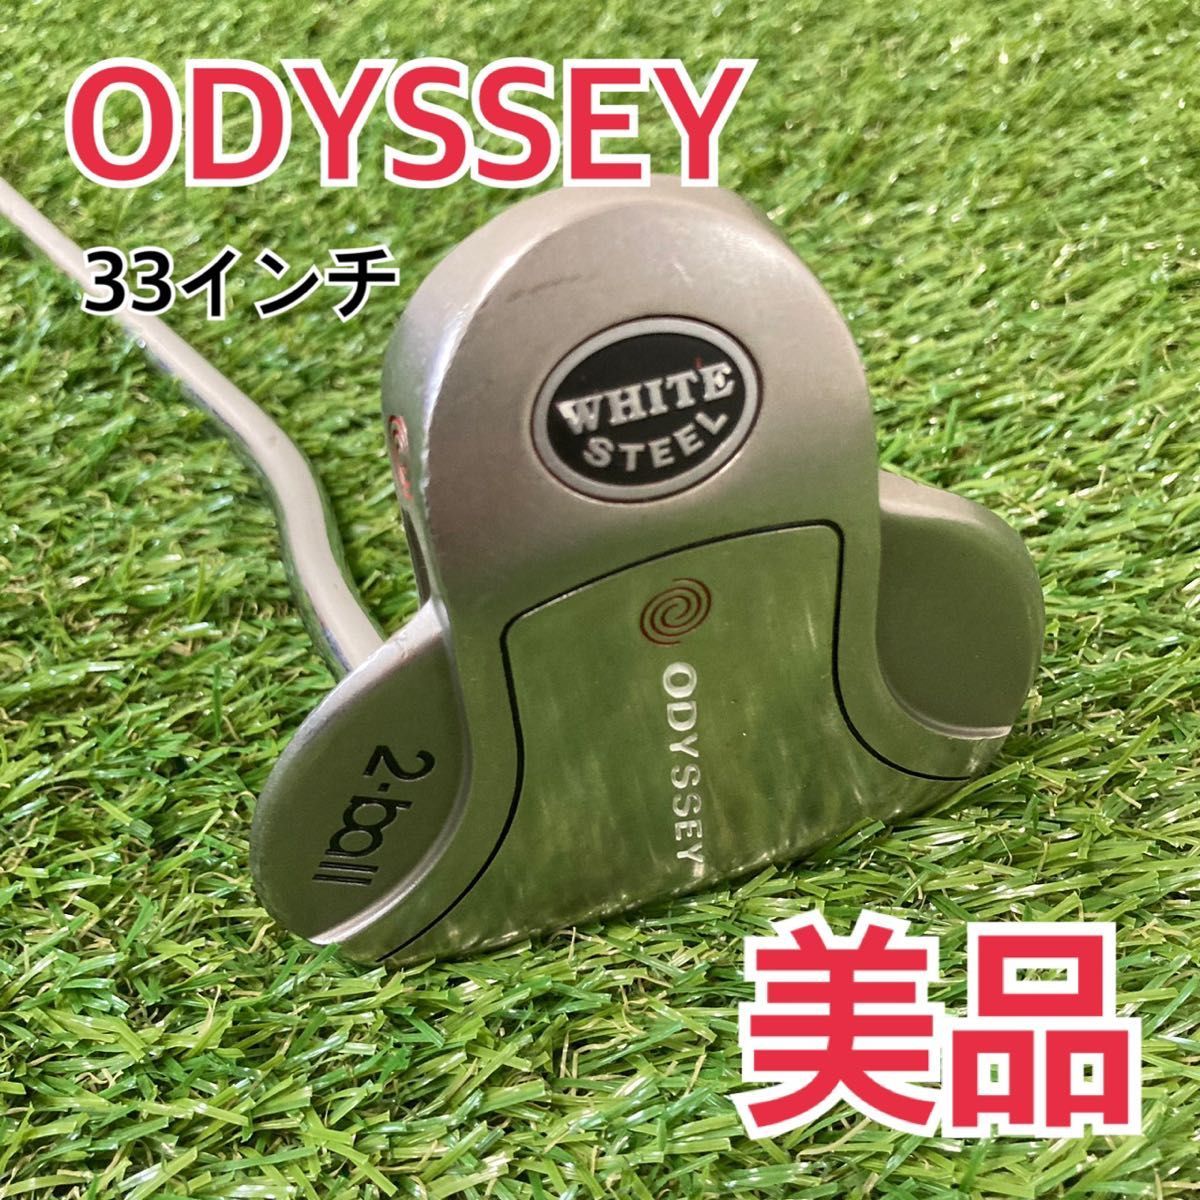 最新情報 【美品】Odyssey オデッセイ WHITE パター 33インチ 2ball